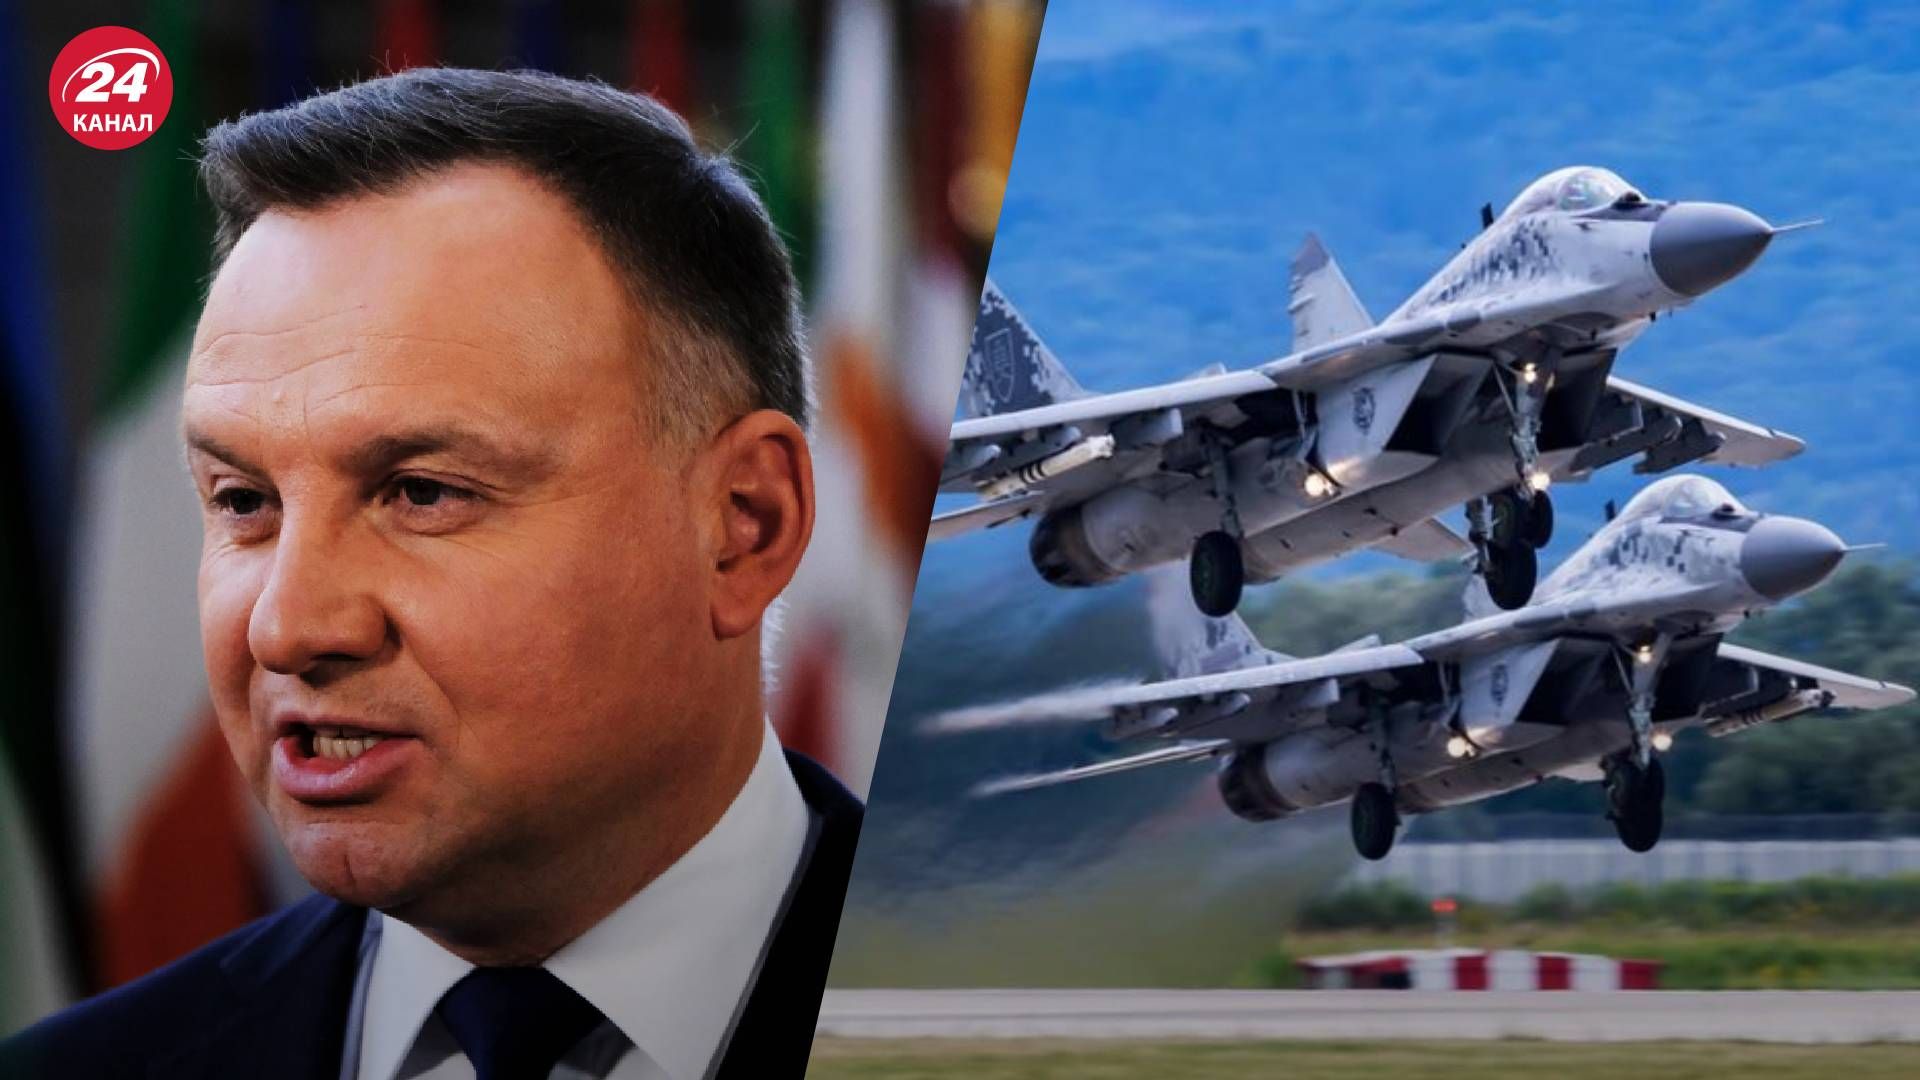 Передача истребителей МиГ-29 - Дуда заявил, что скоро Украина получит 4 самолета